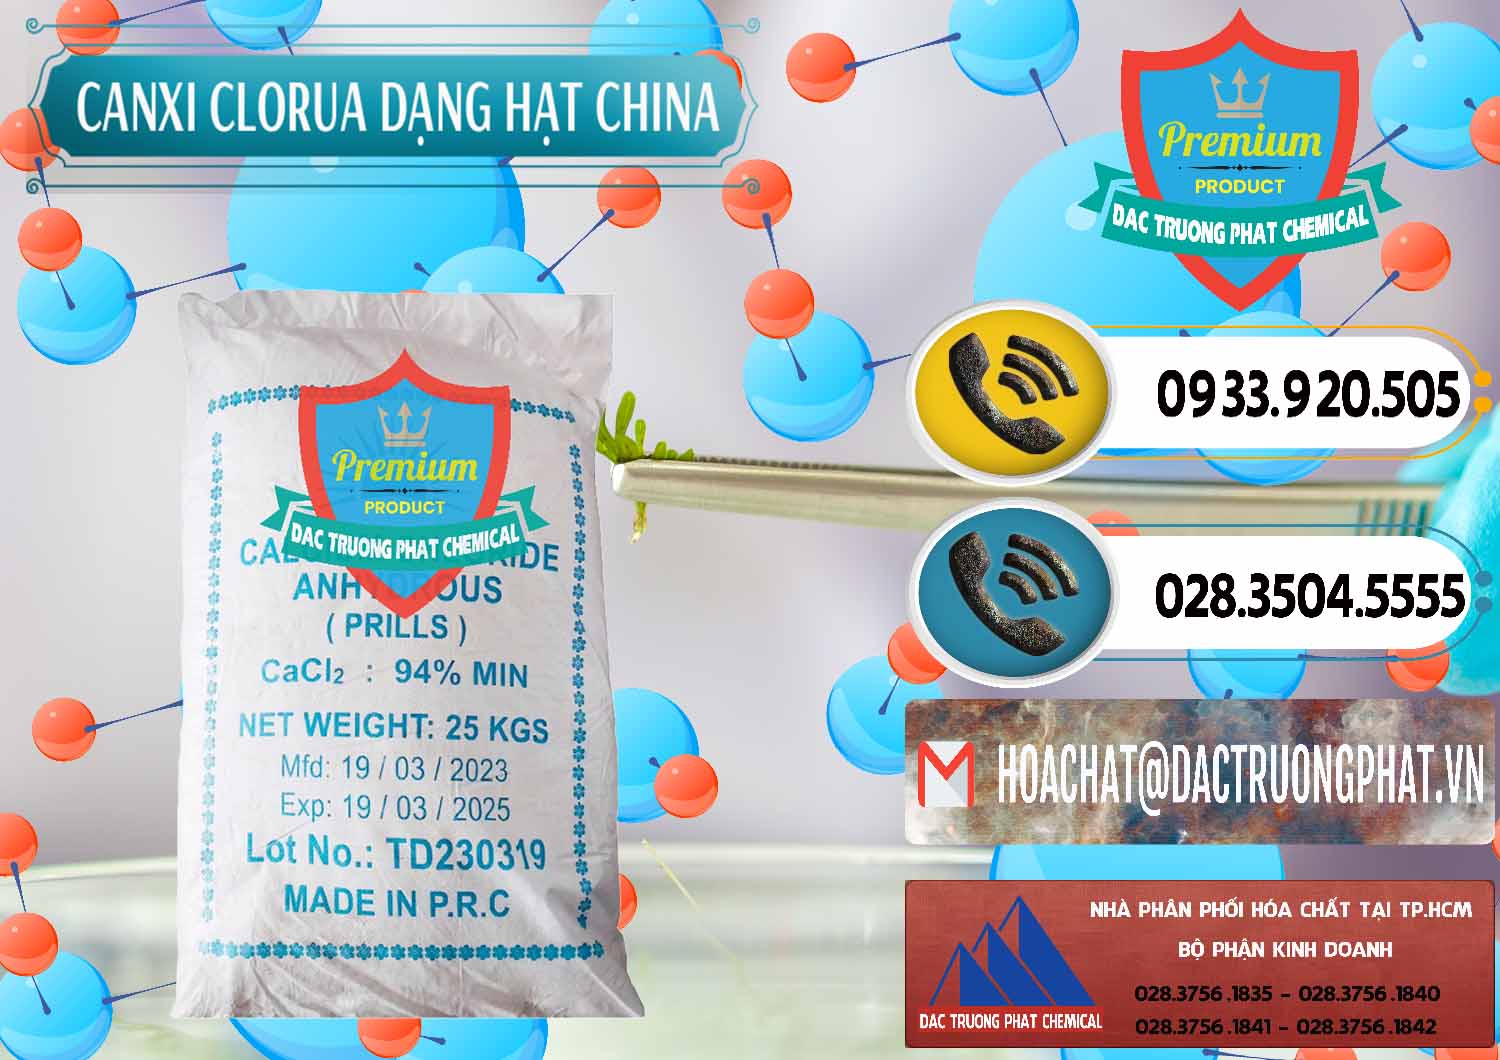 Công ty phân phối ( bán ) CaCl2 – Canxi Clorua 94% Dạng Hạt Trung Quốc China - 0373 - Cty cung cấp - phân phối hóa chất tại TP.HCM - hoachatdetnhuom.vn